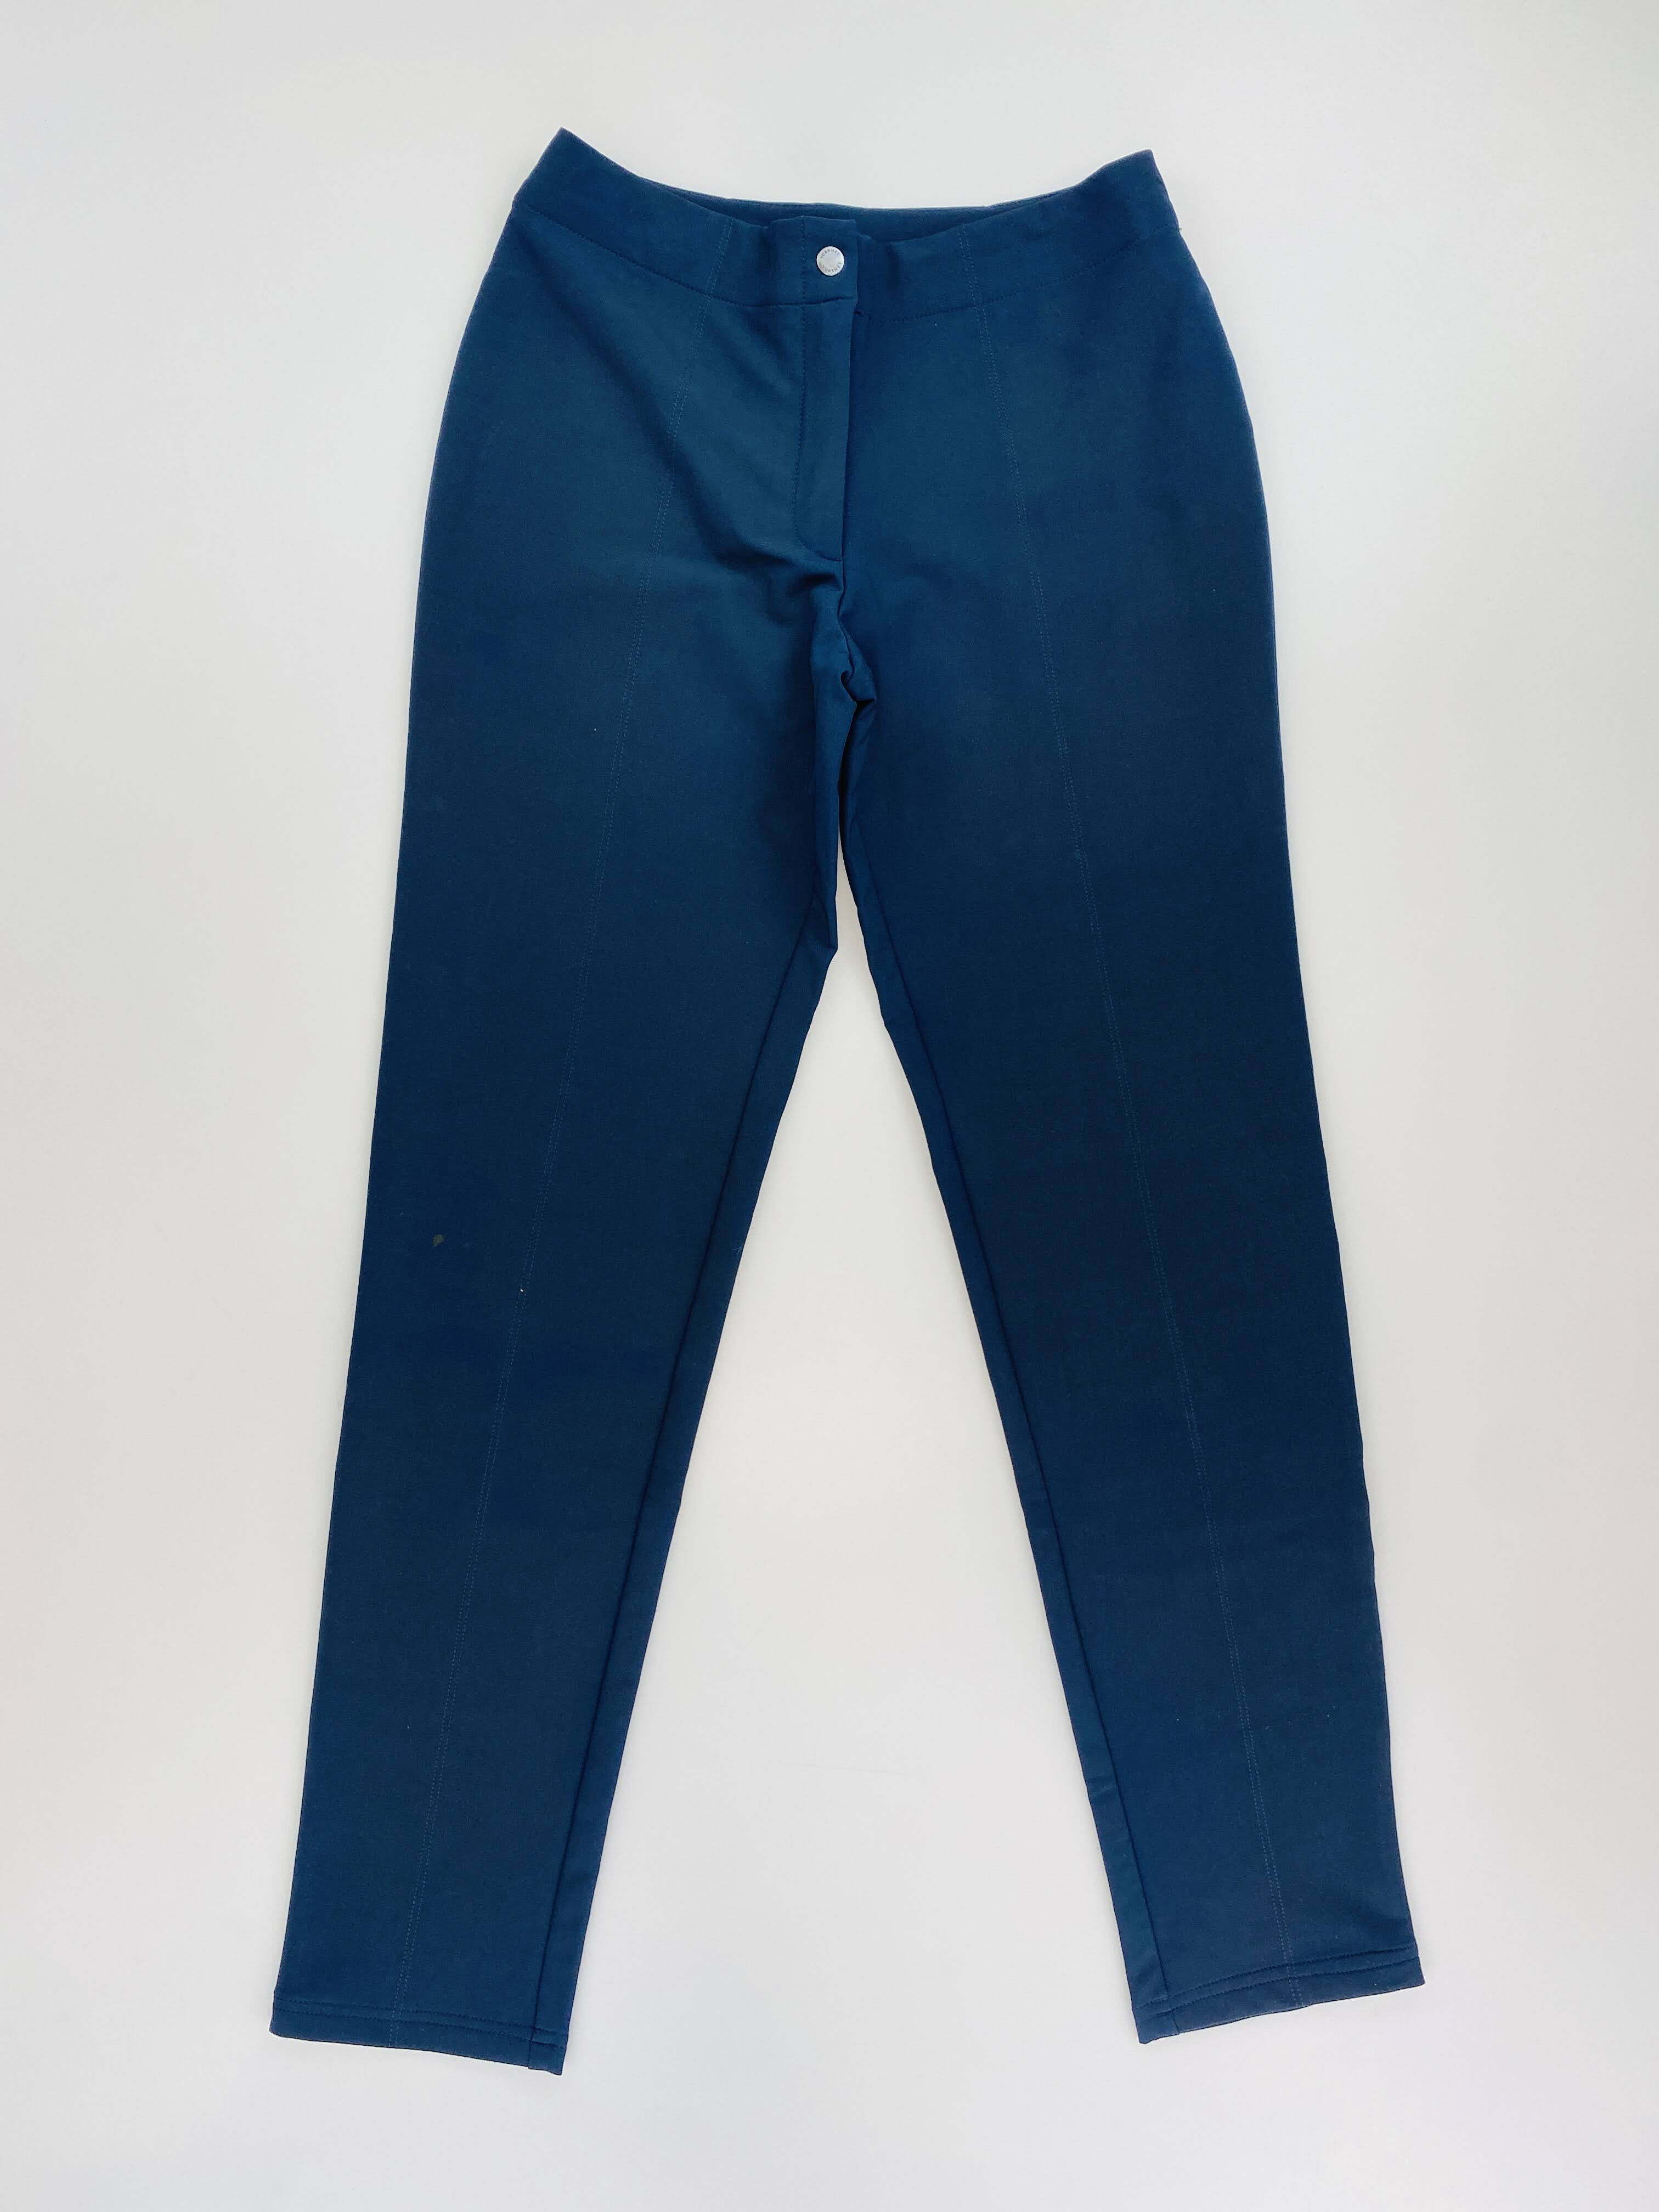 Vuarnet Baltico Pant - Seconde main Pantalon femme - Bleu - S | Hardloop